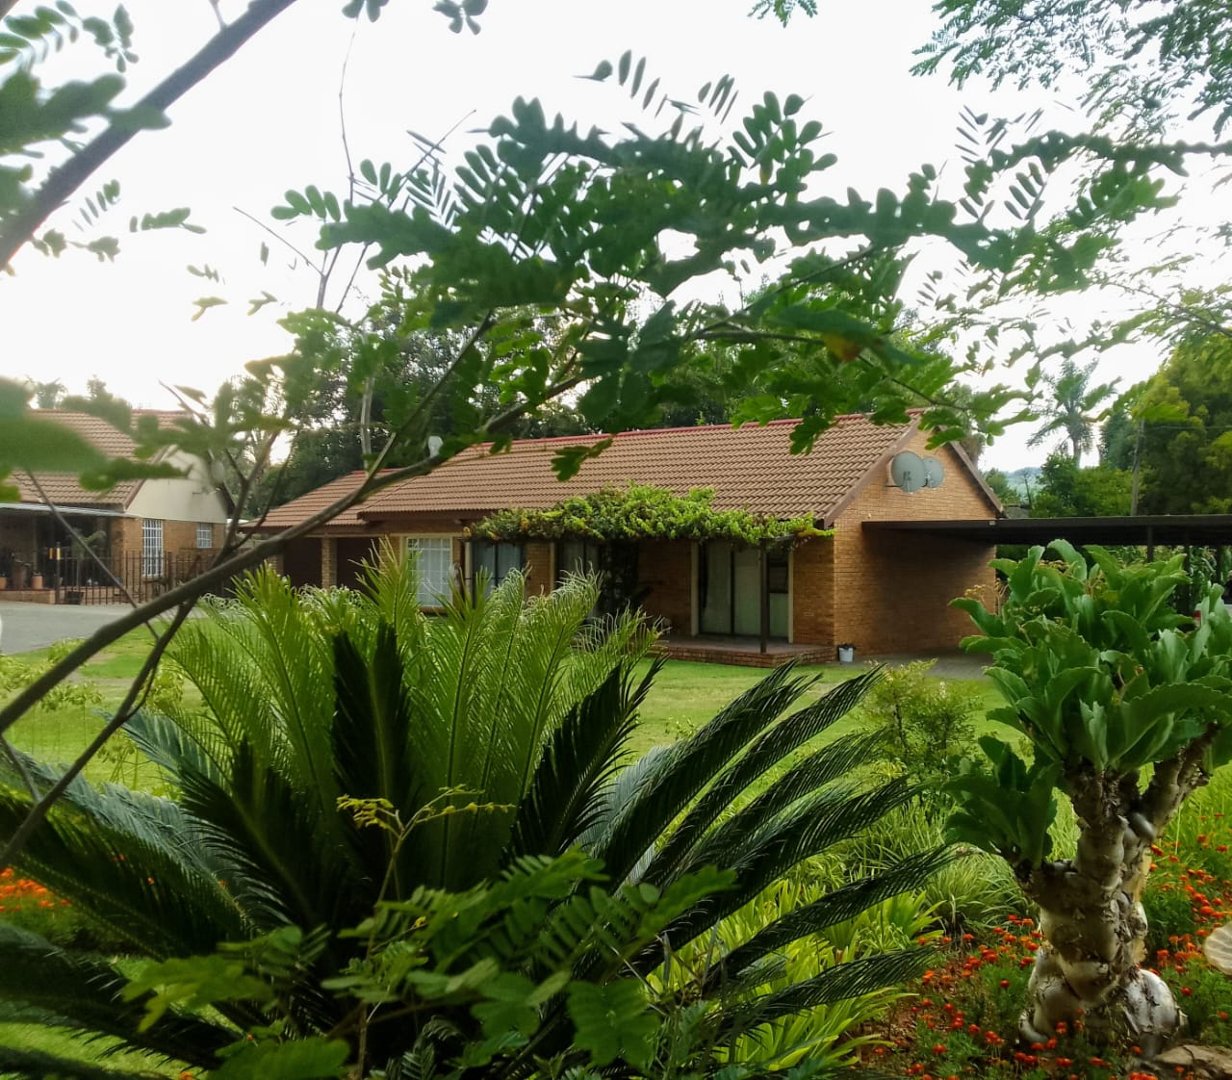 1 Bedroom Property for Sale in Pioneer Park KwaZulu-Natal